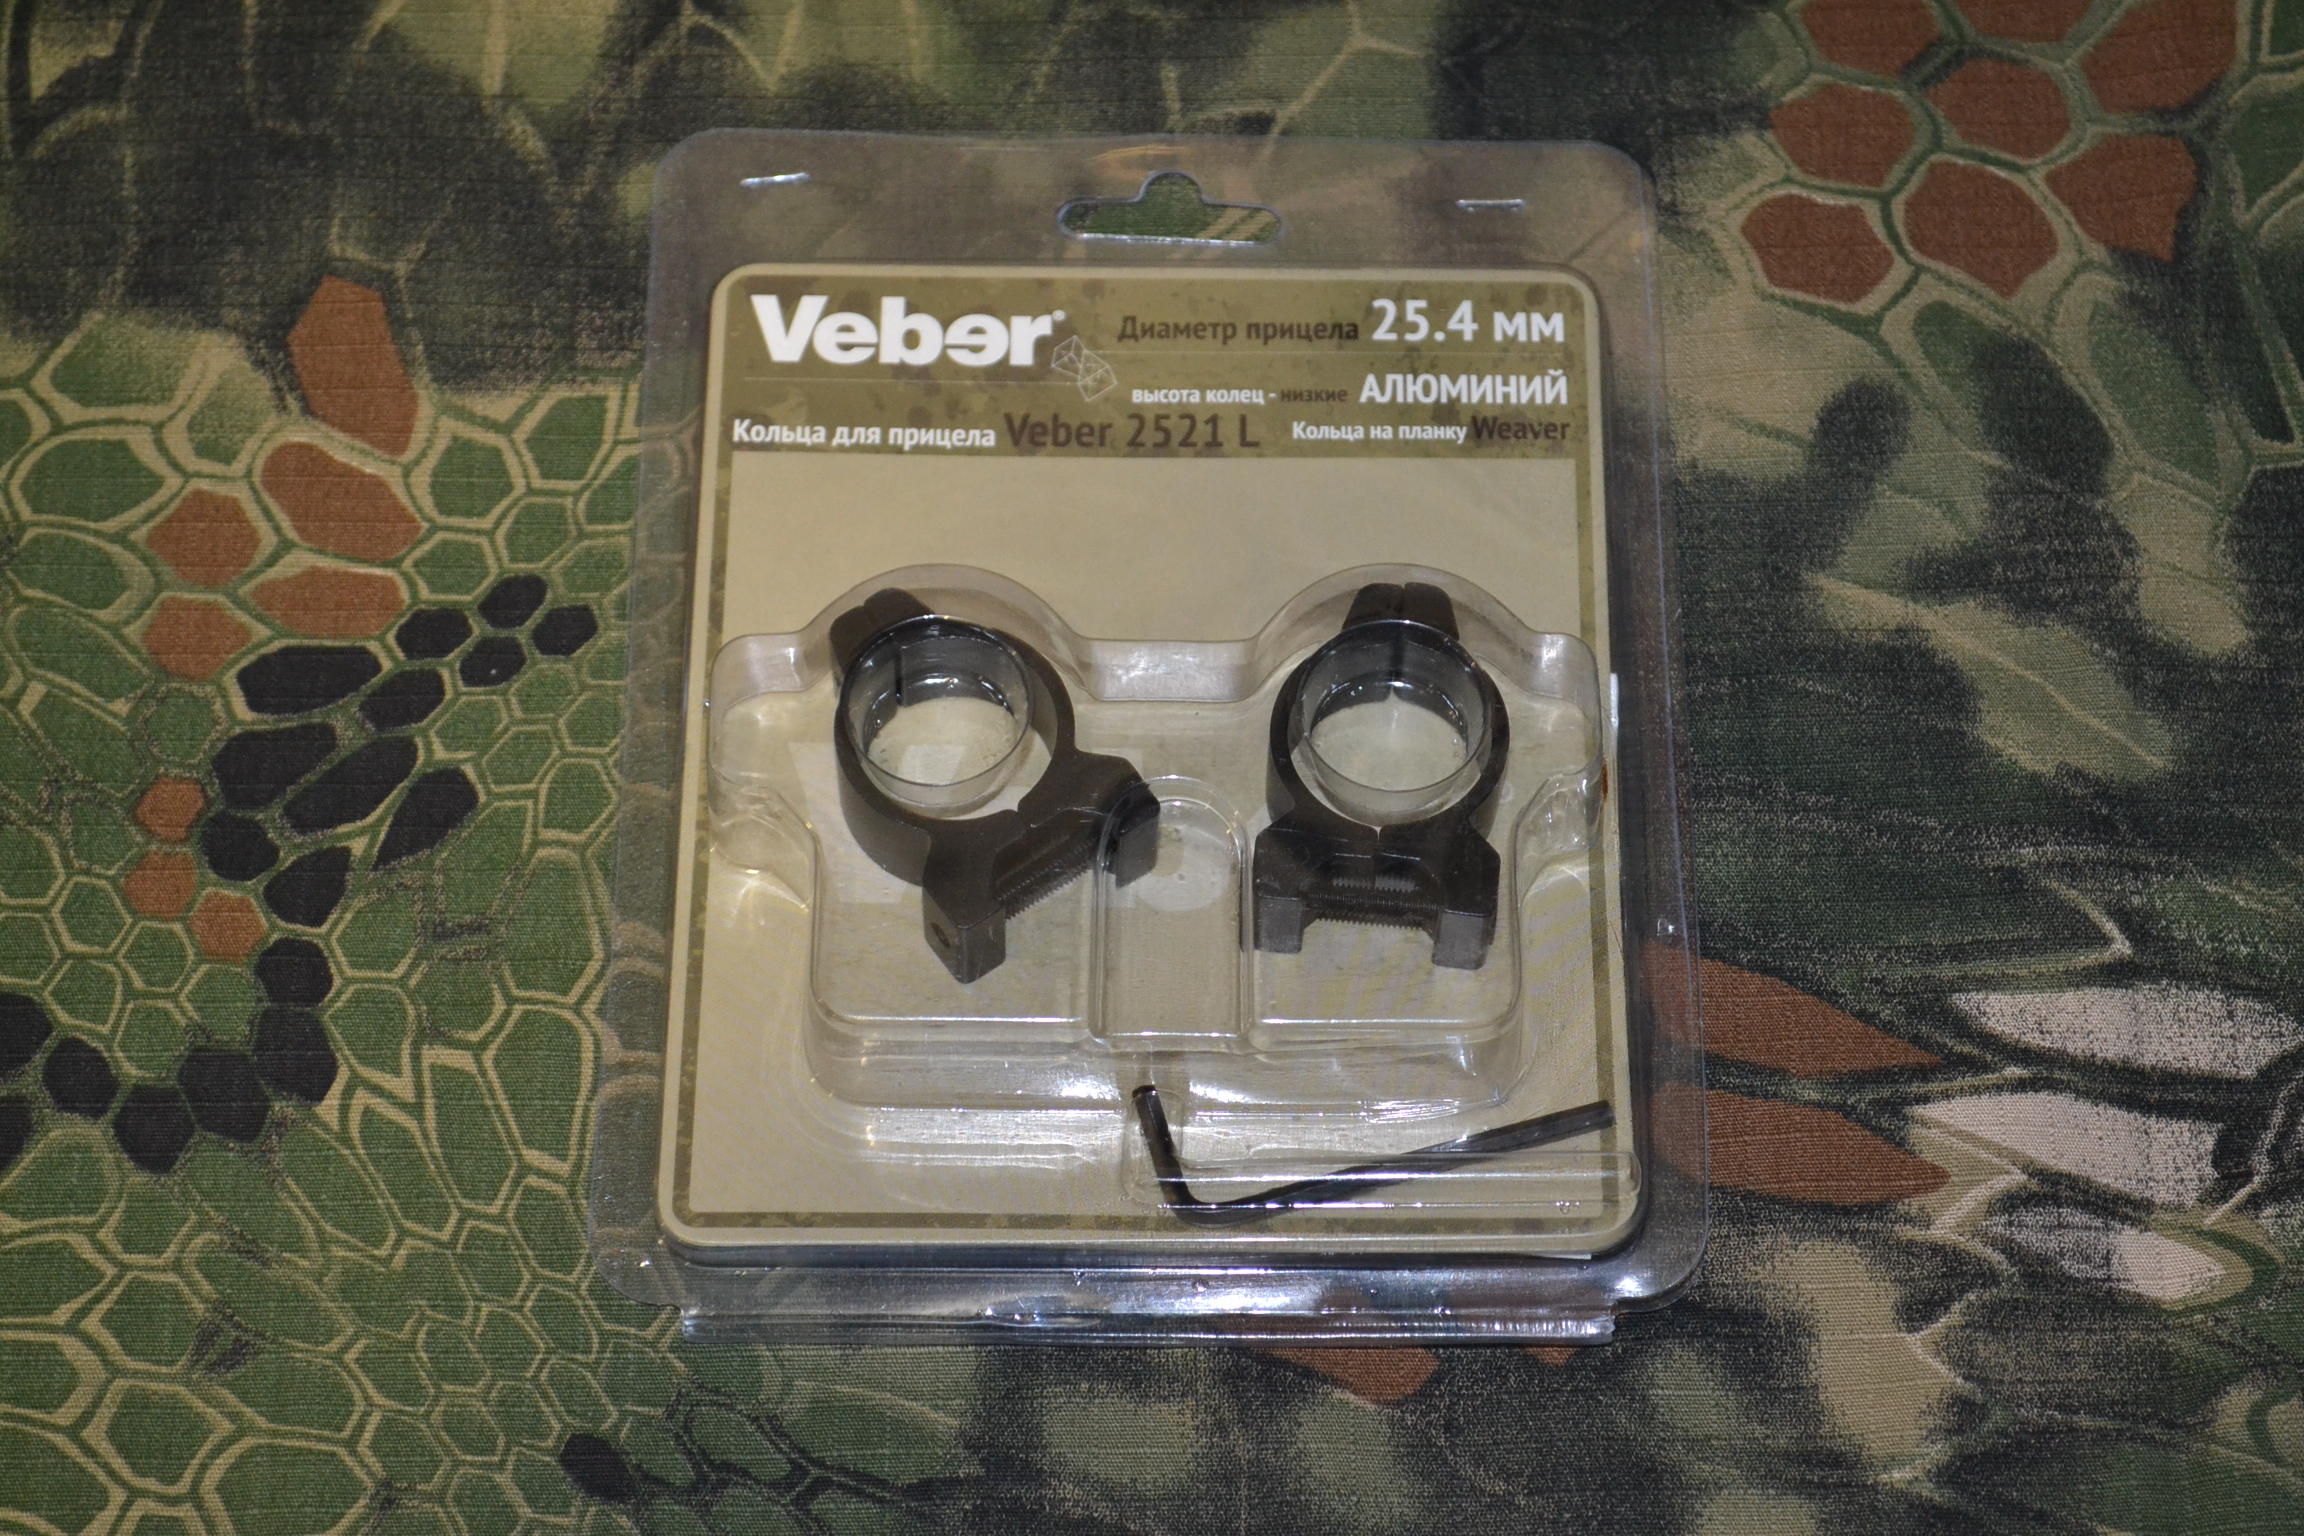 Кольца для прицела Veber 2521 L